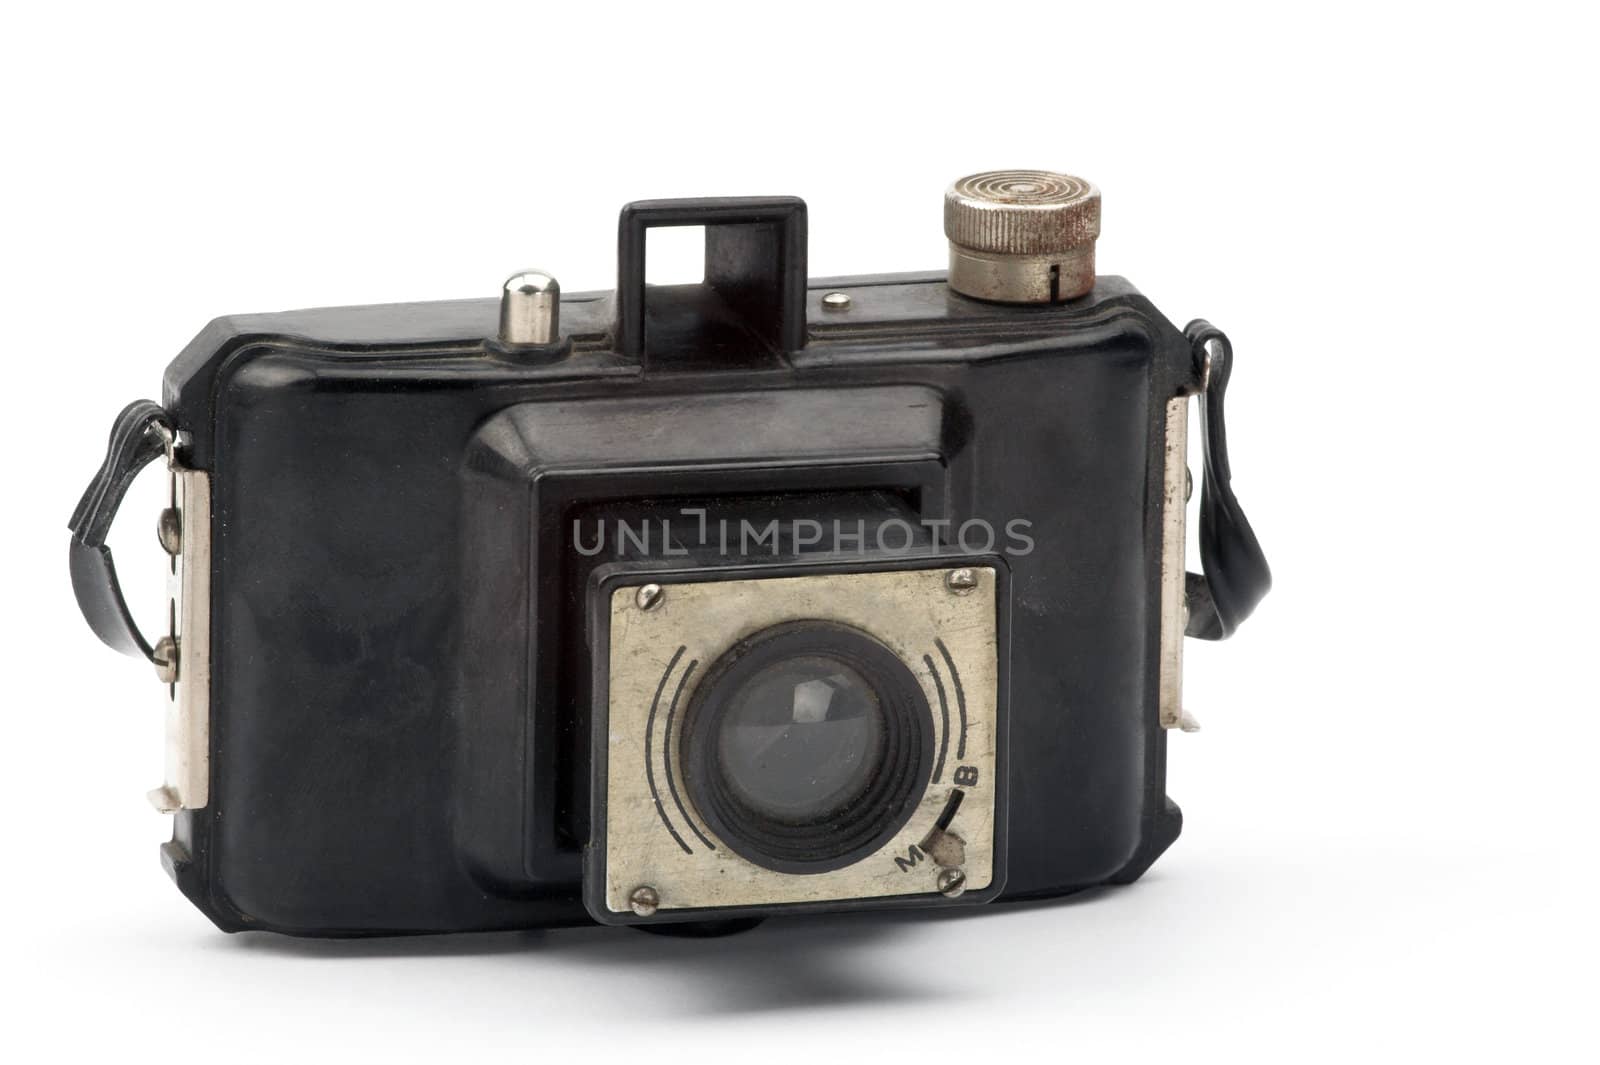 Old camera by alexkosev